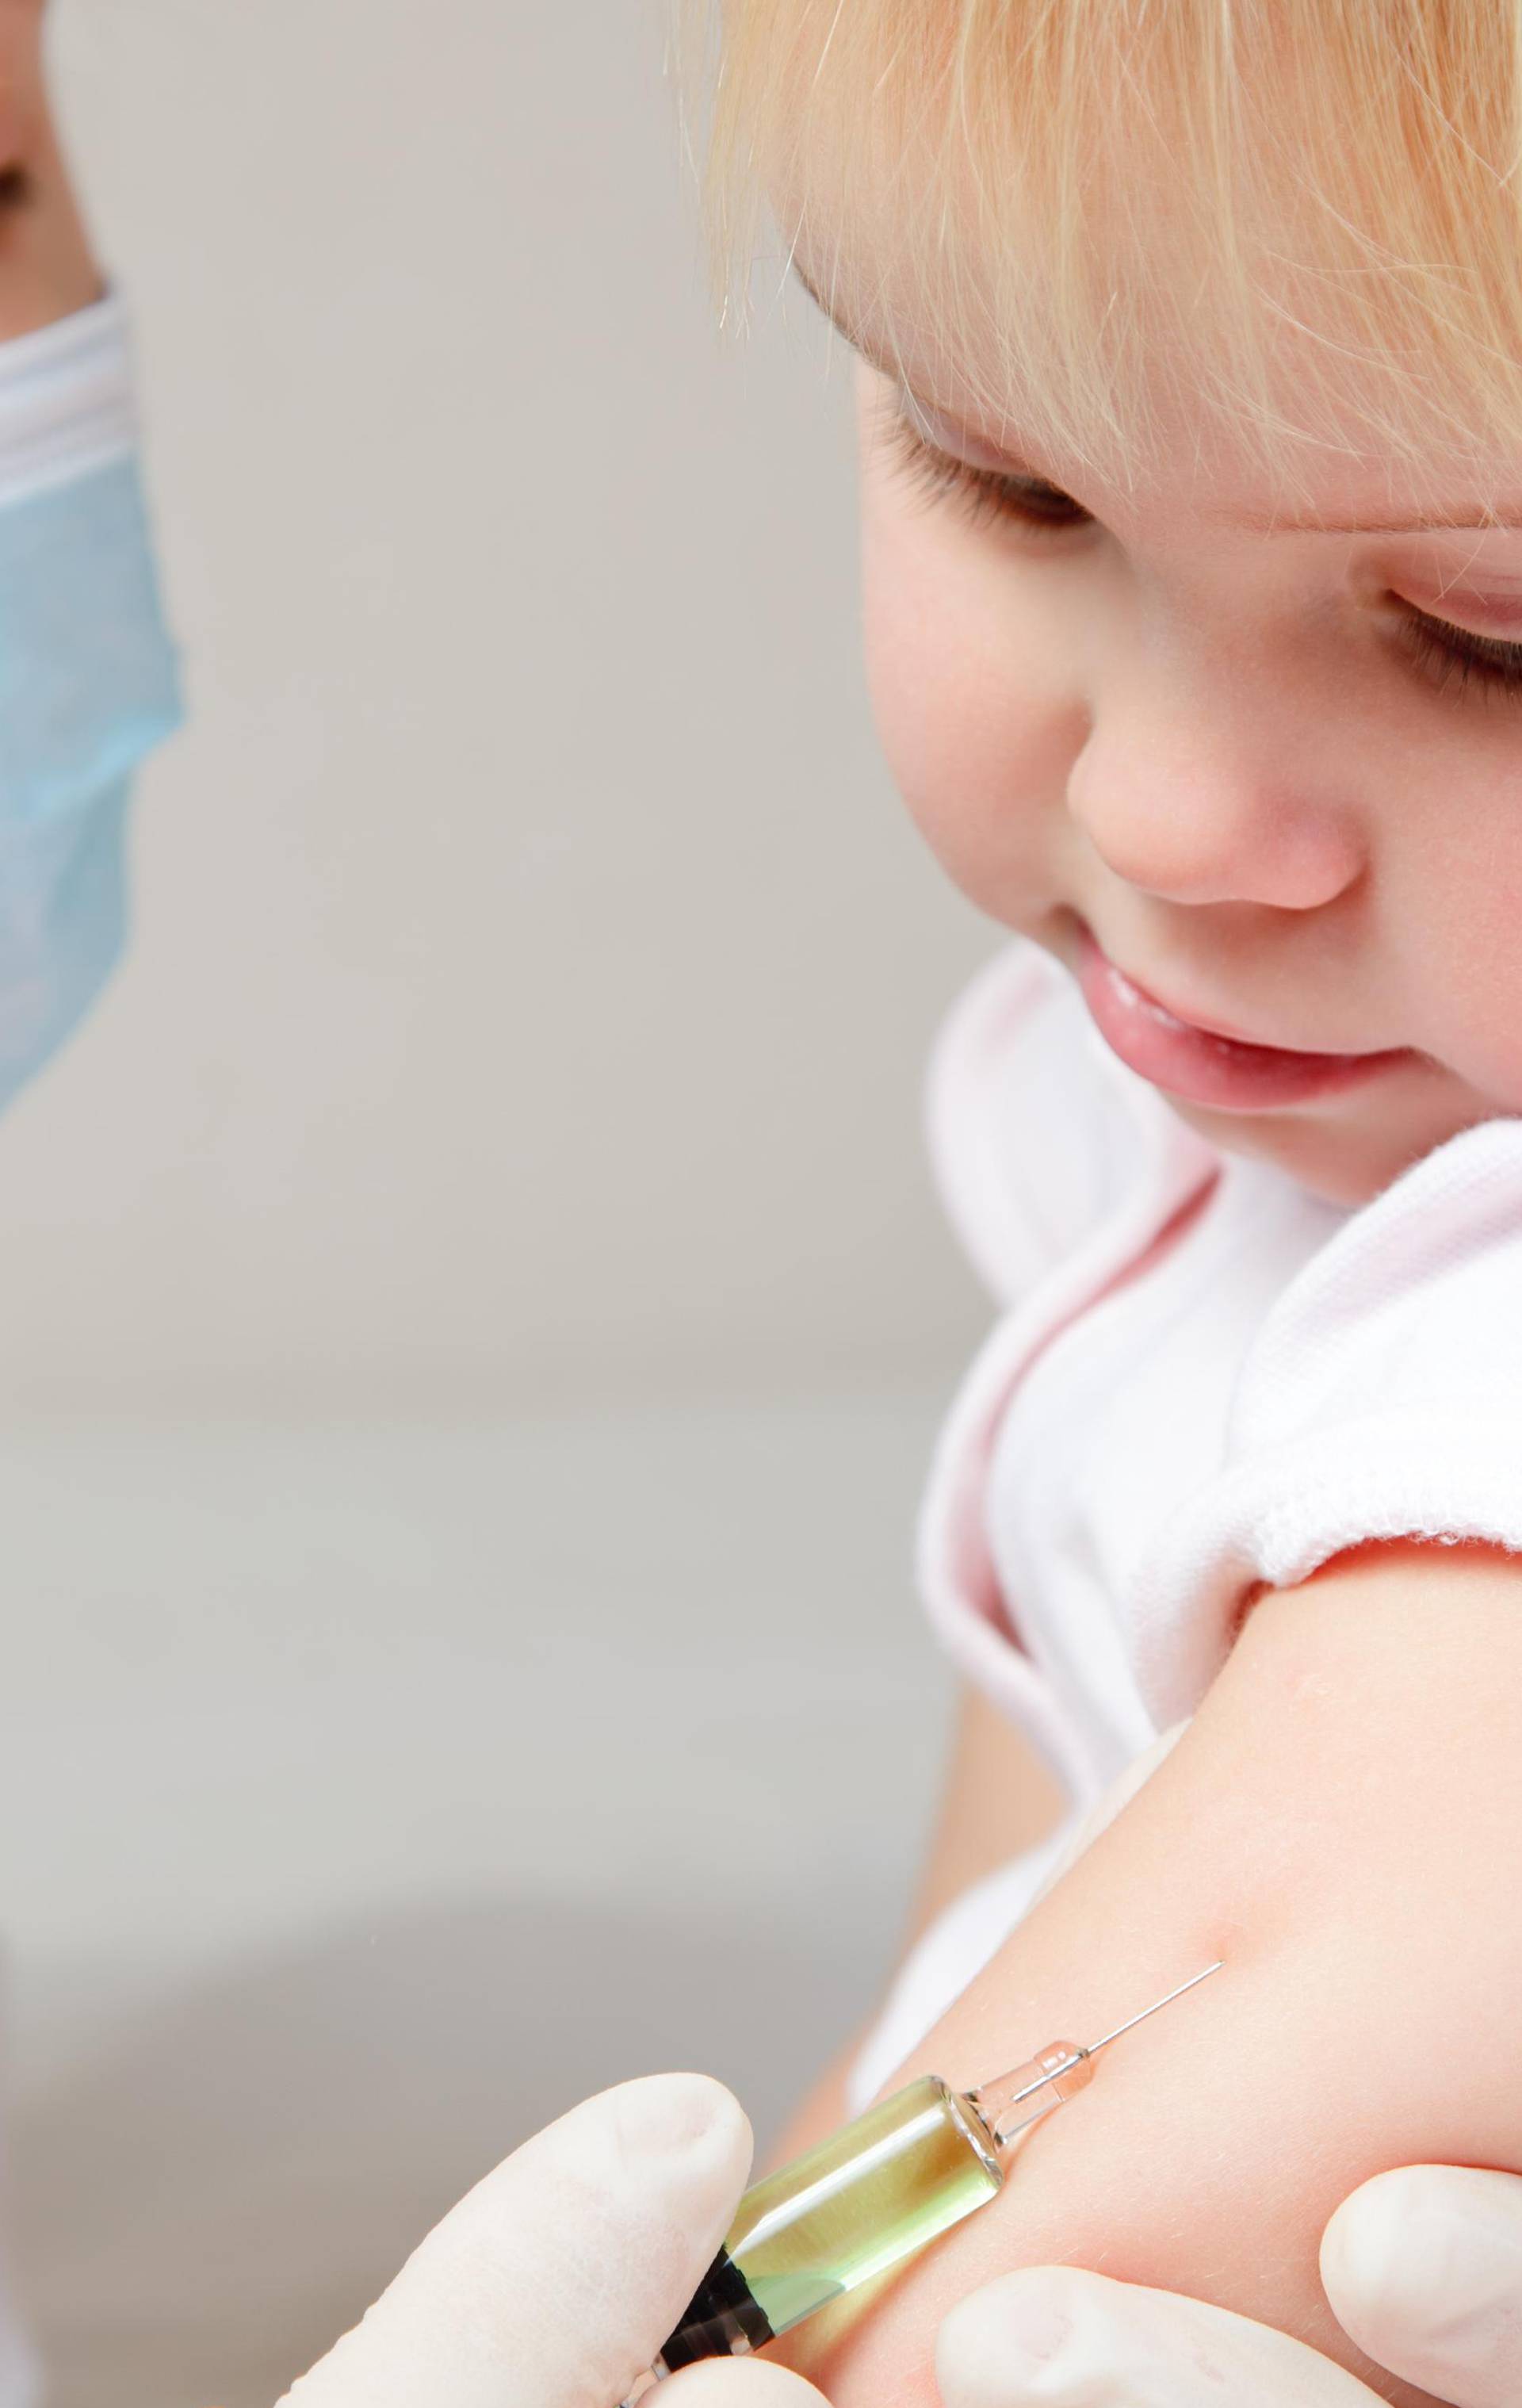 Pedijatri žele akciju: Djecu bez cjepiva ne treba upisati u vrtić